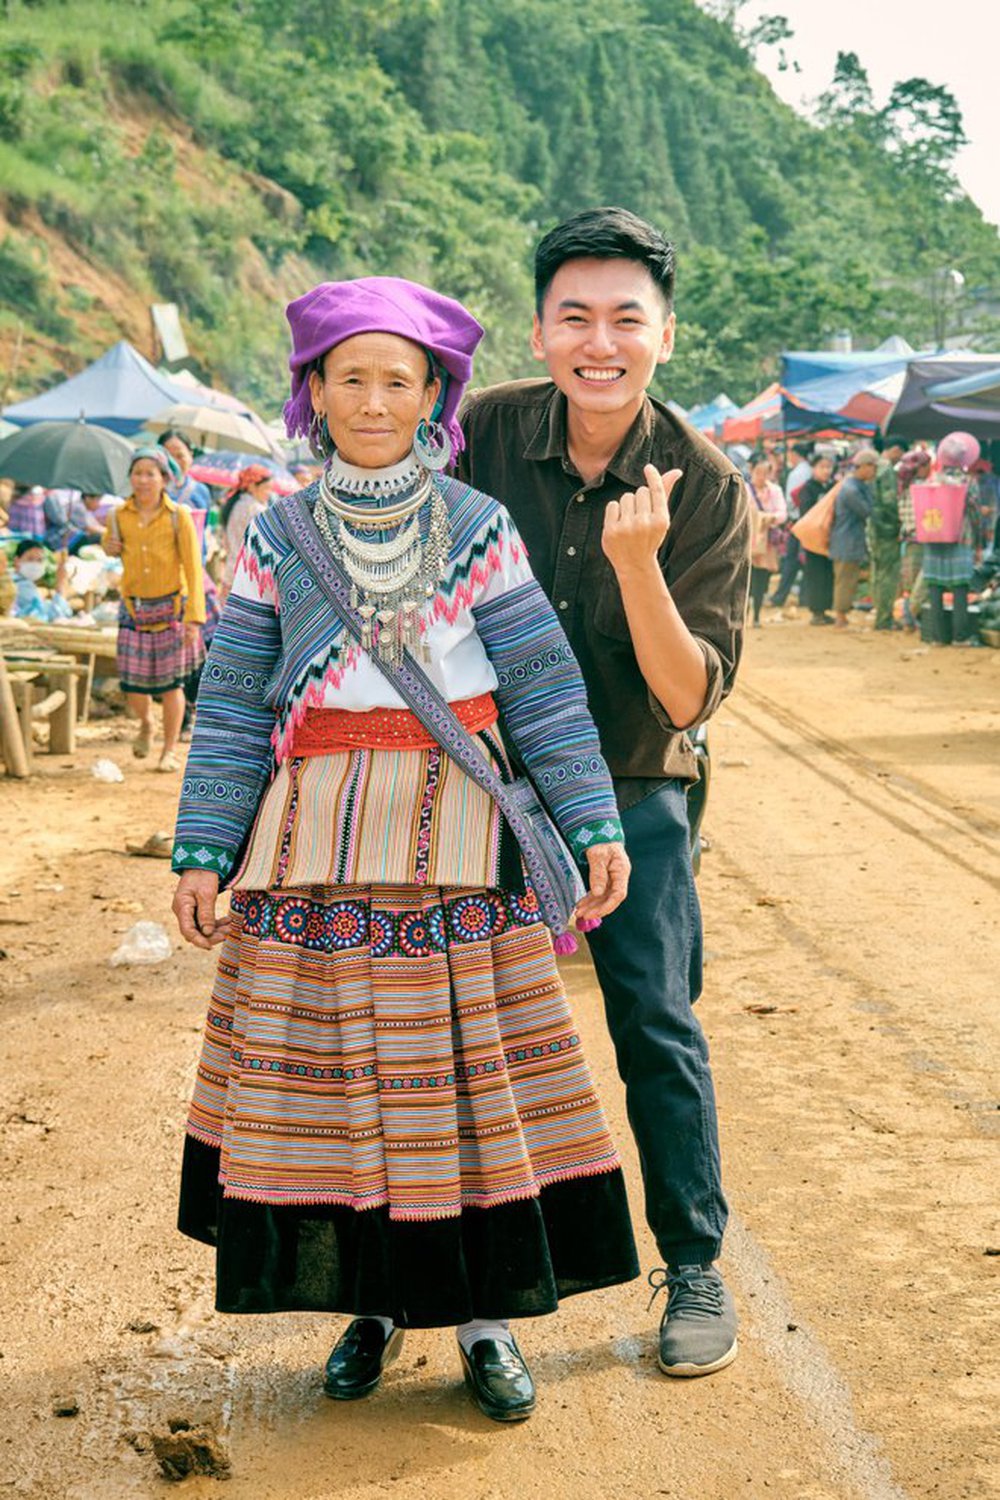 Travel blogger vừa khiến hoa hậu Thuỳ Tiên phải vào xin lỗi vì mặc sai trang phục là ai? - ảnh 3